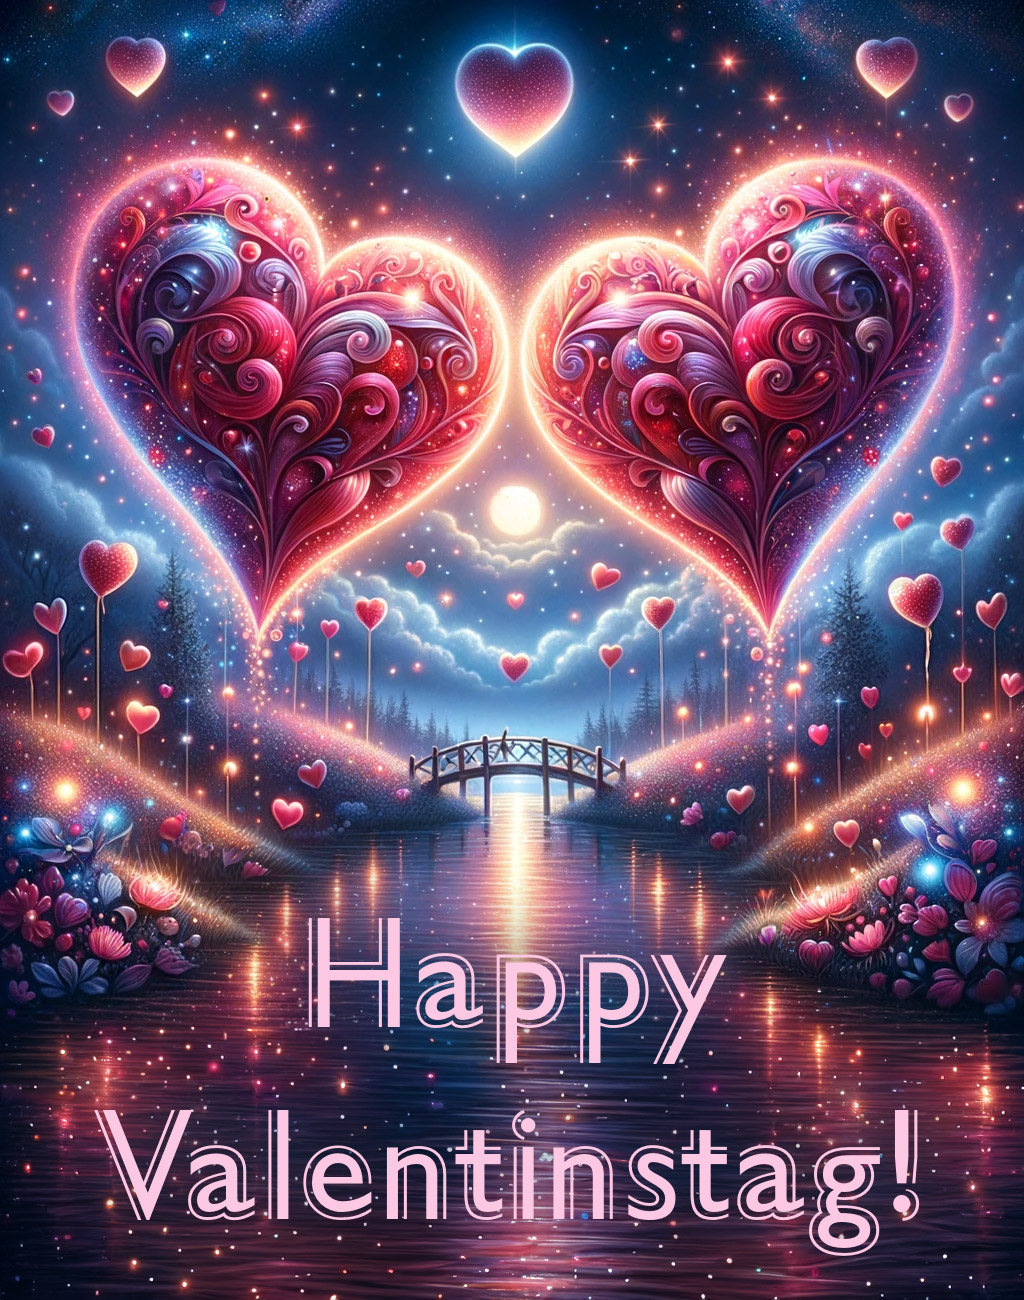 #valentinstag #kunst 23 - Happy Valentinstag!